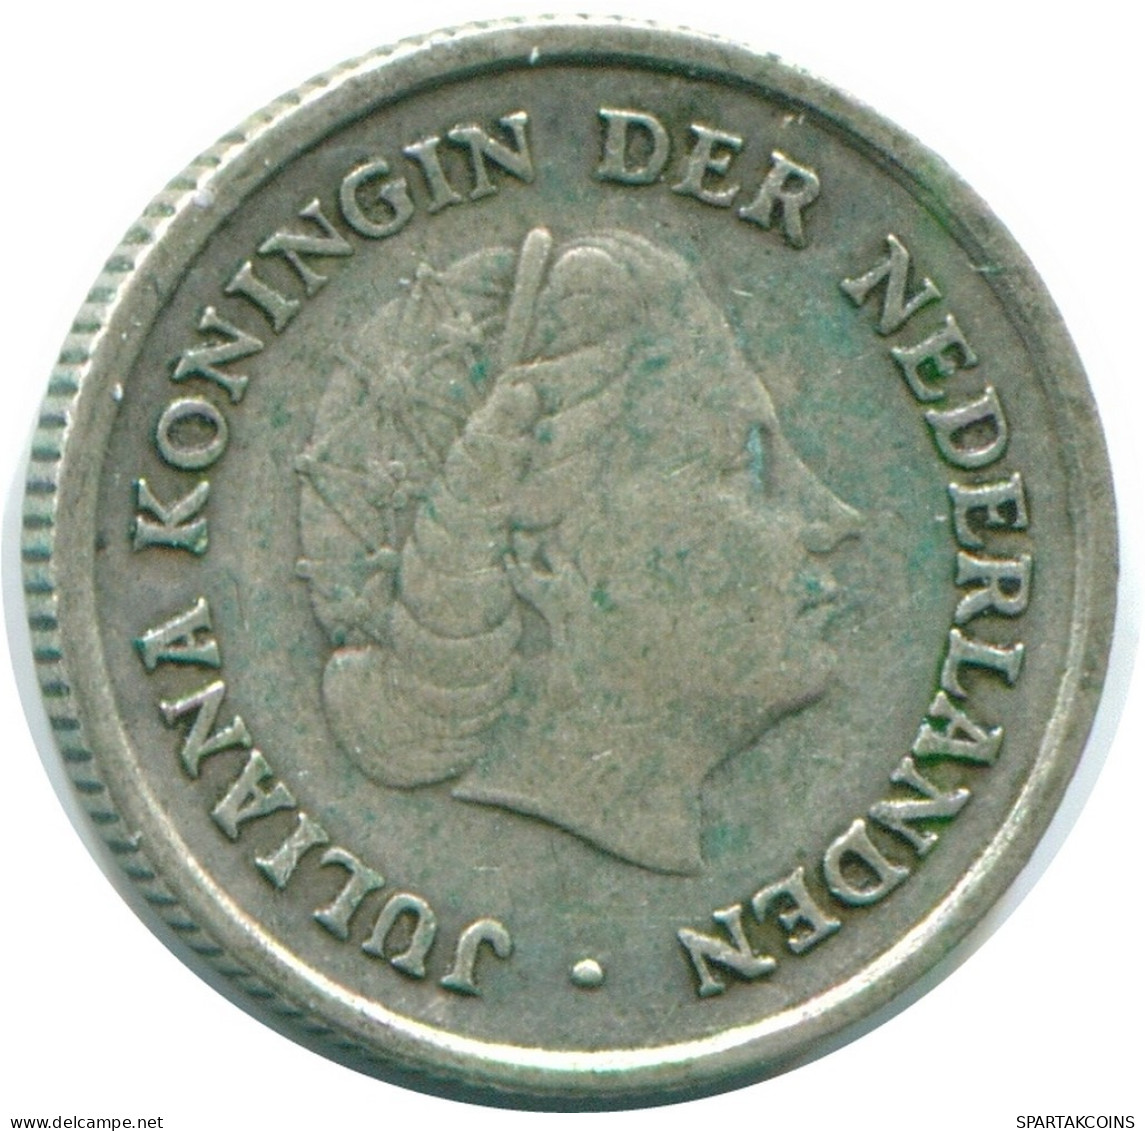 1/10 GULDEN 1962 NIEDERLÄNDISCHE ANTILLEN SILBER Koloniale Münze #NL12420.3.D.A - Antilles Néerlandaises